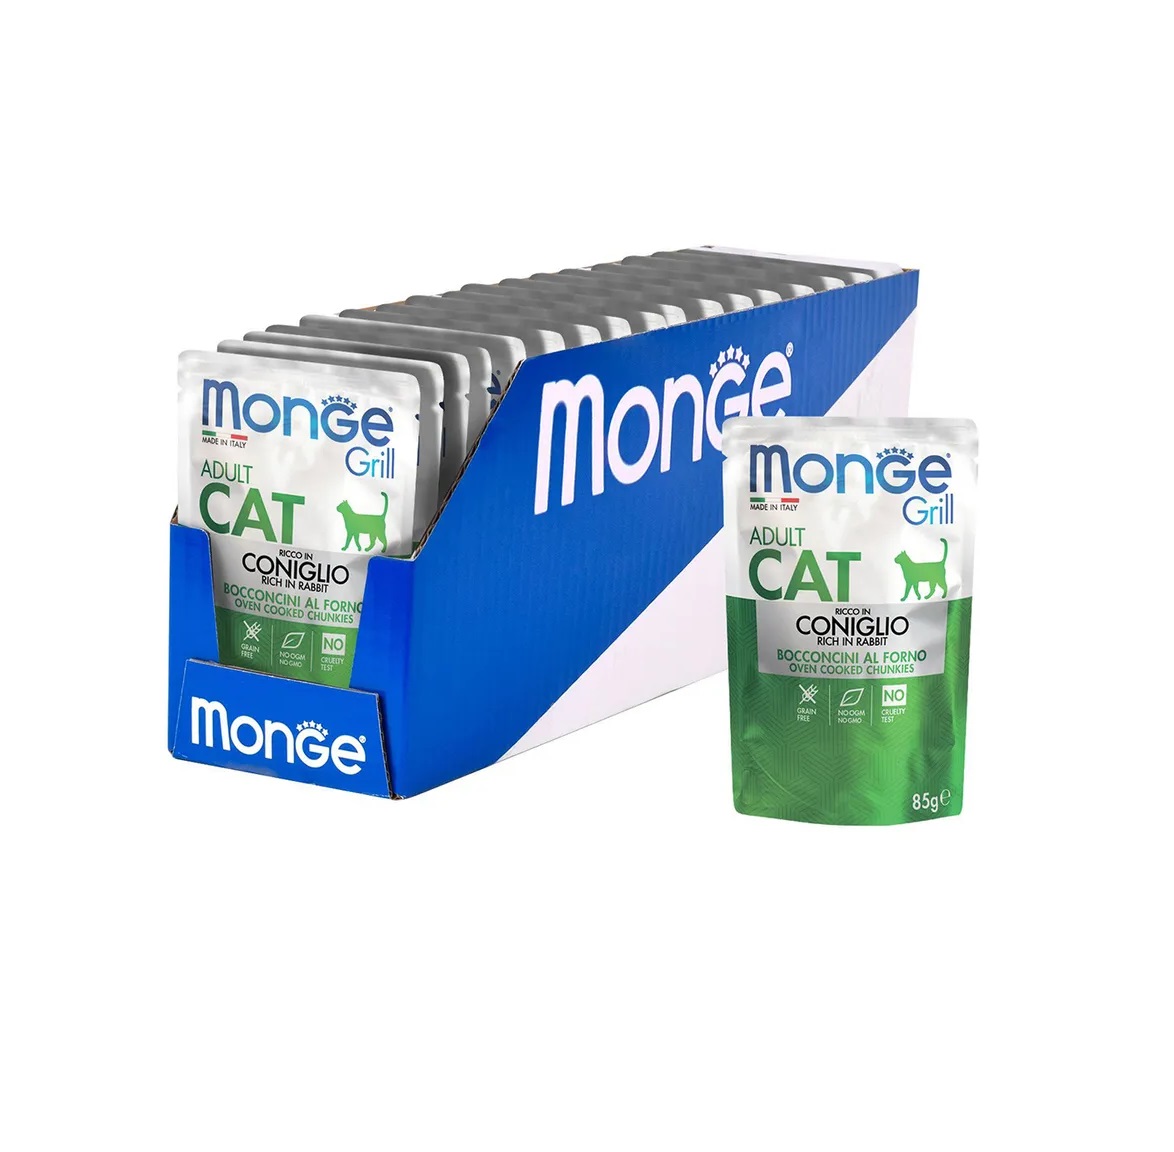 Монж пауч 85гр - Cat Grill - Кролик Итальянский - кусочки в Желе - для Кошек (Monge) 1кор = 28шт